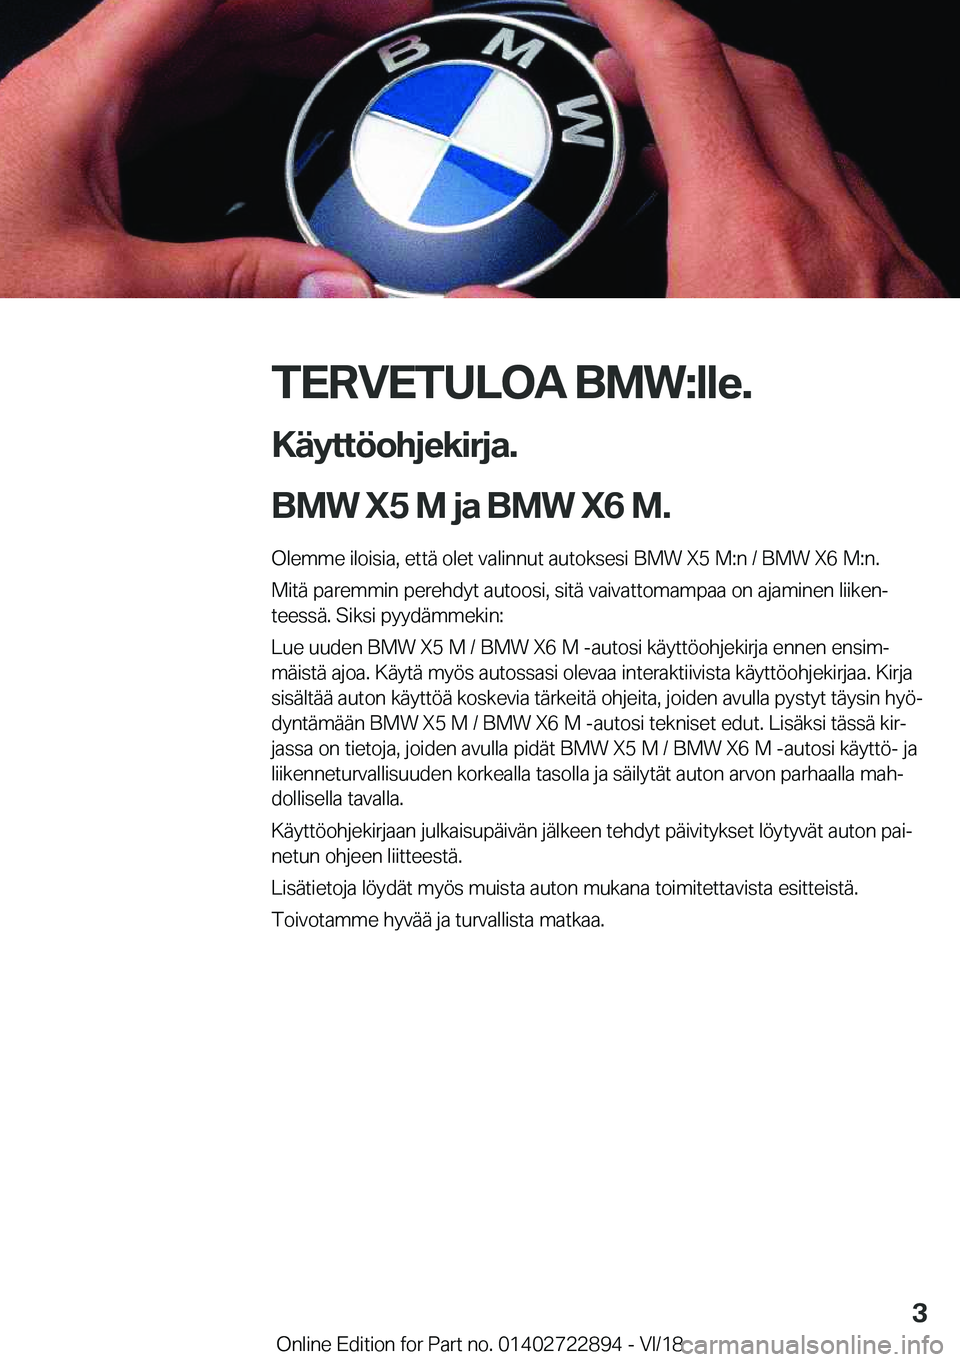 BMW X6 M 2019  Omistajan Käsikirja (in Finnish) �T�E�R�V�E�T�U�L�O�A��B�M�W�:�l�l�e�.�K�